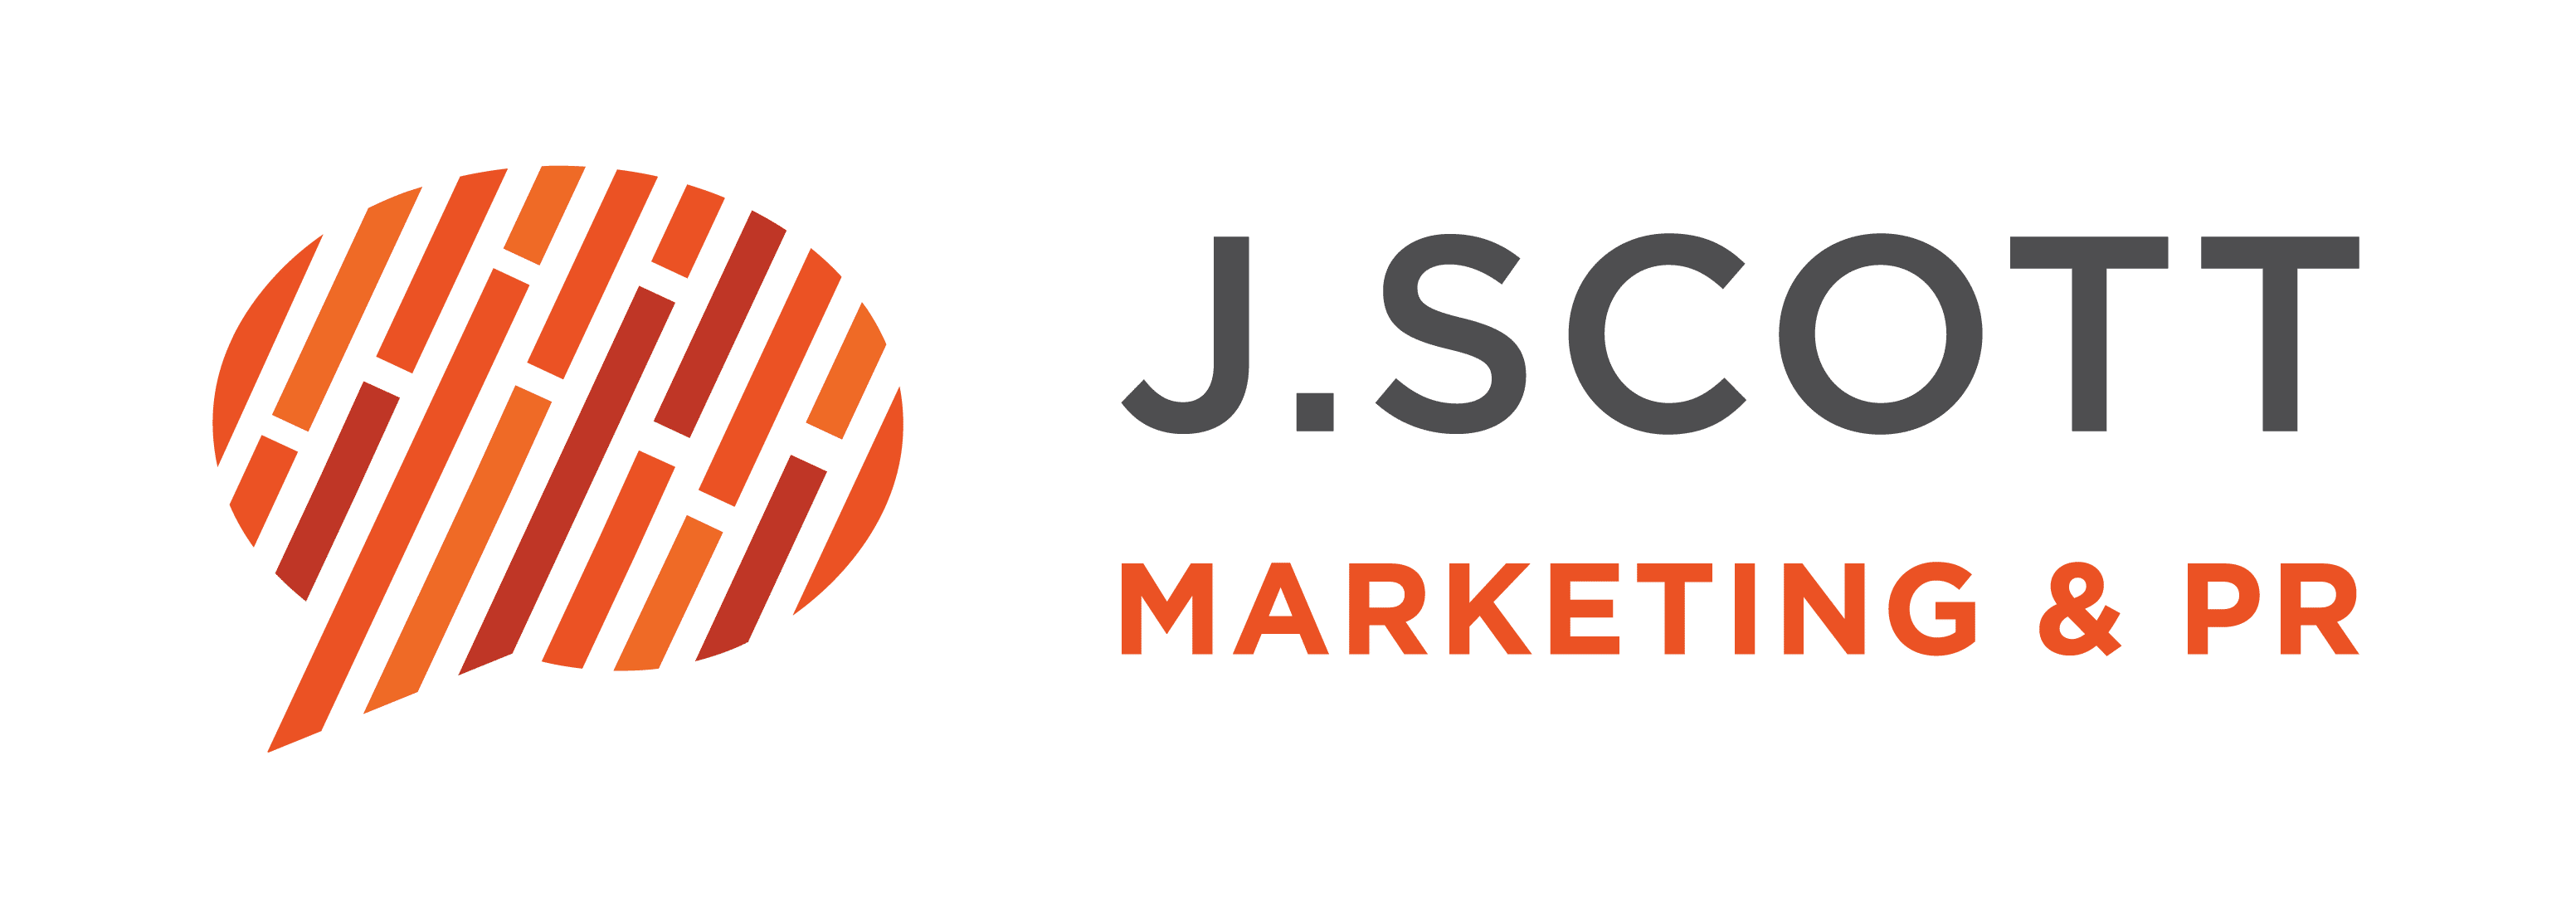 logo: JScott after